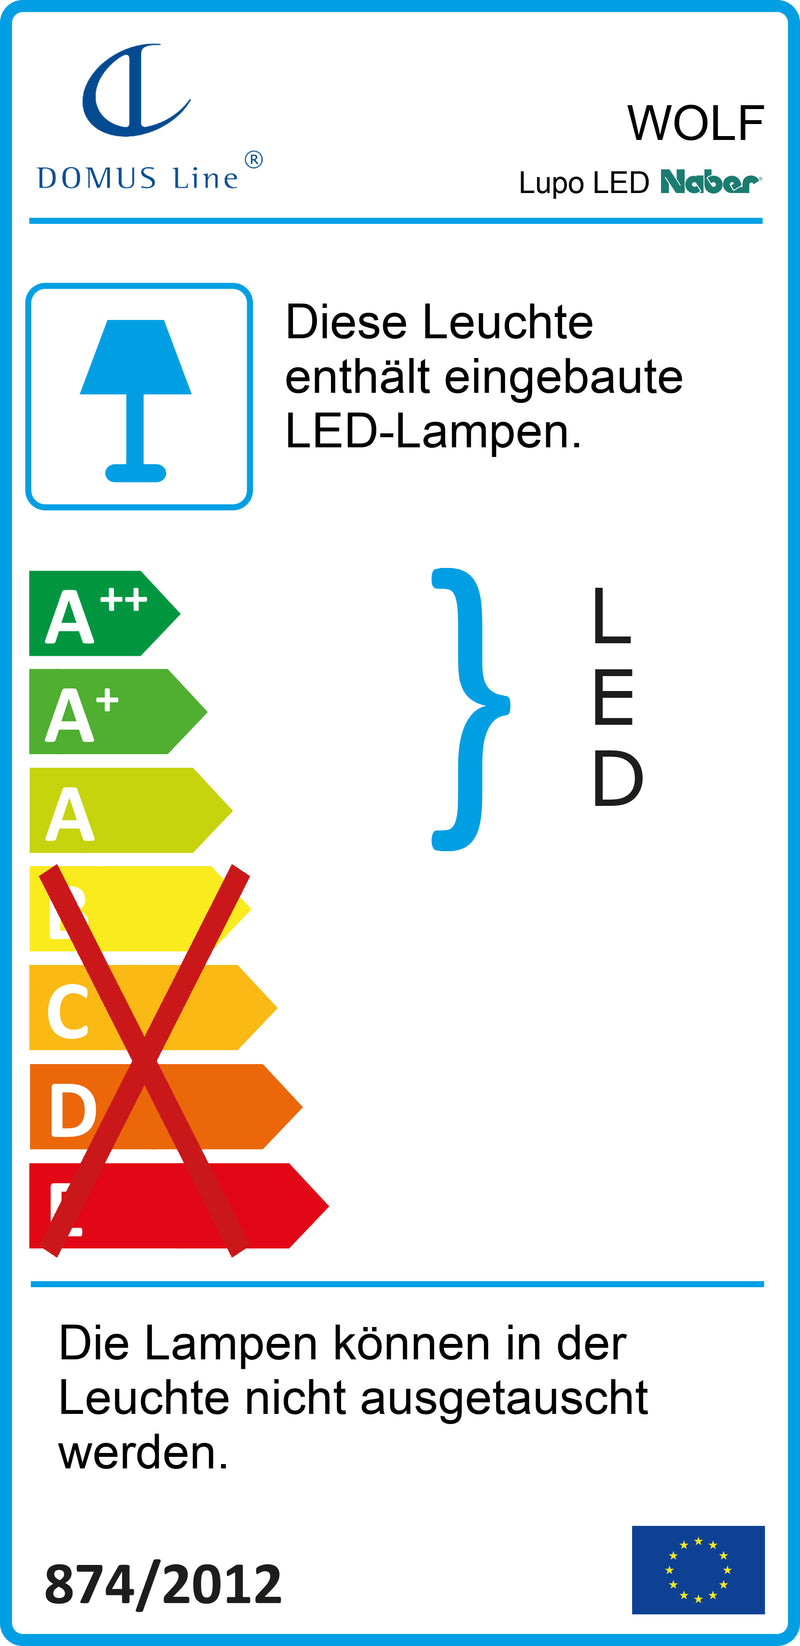 E-Label zu Zeichnung zu Lupo LED als Variante L 1200 mm, 18 W, alufarbig von Naber GmbH in der Kategorie Lichttechnik in Österreich auf conceptshop.at